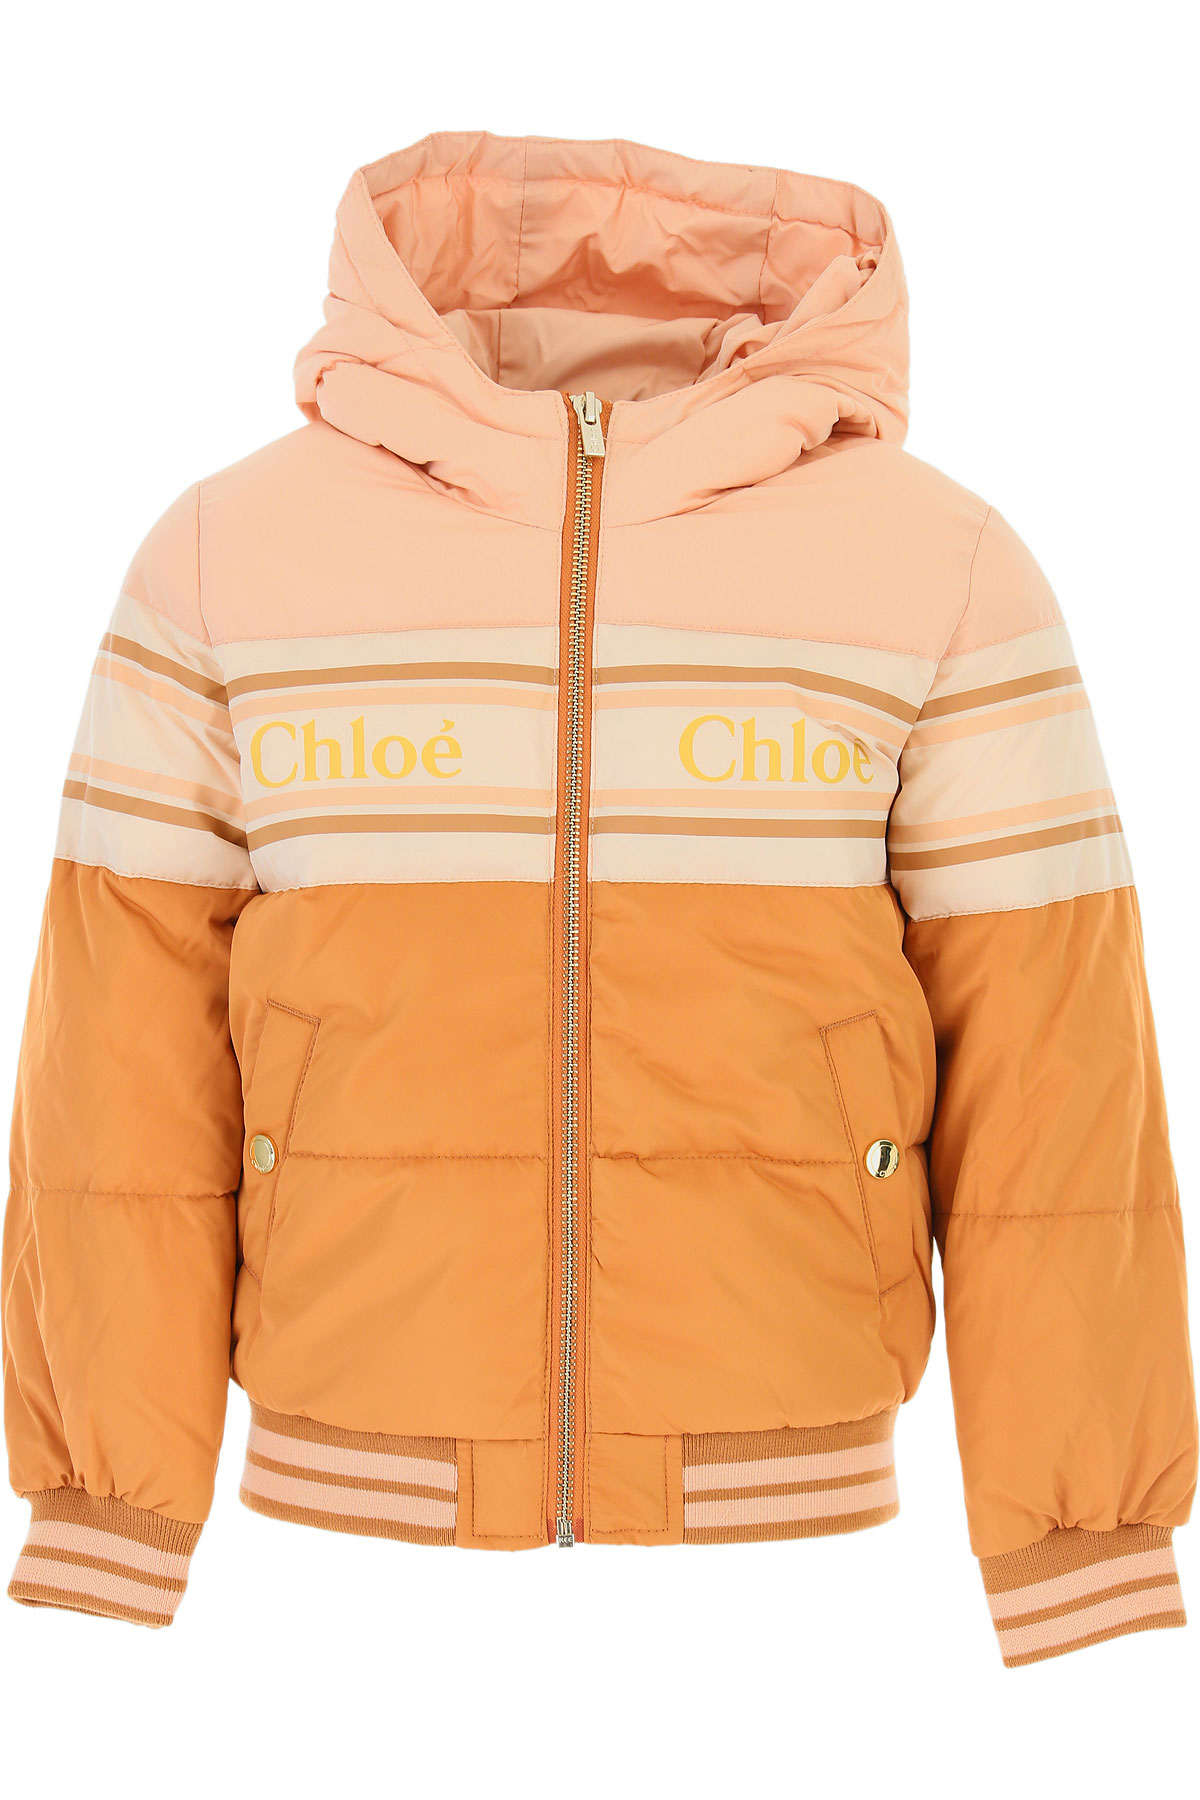 Chloe Kinder Daunen Jacke für Mädchen, Soft Shell Ski Jacken Günstig im Sale, Hellpink, Polyester, 2017, 10Y 6Y 8Y